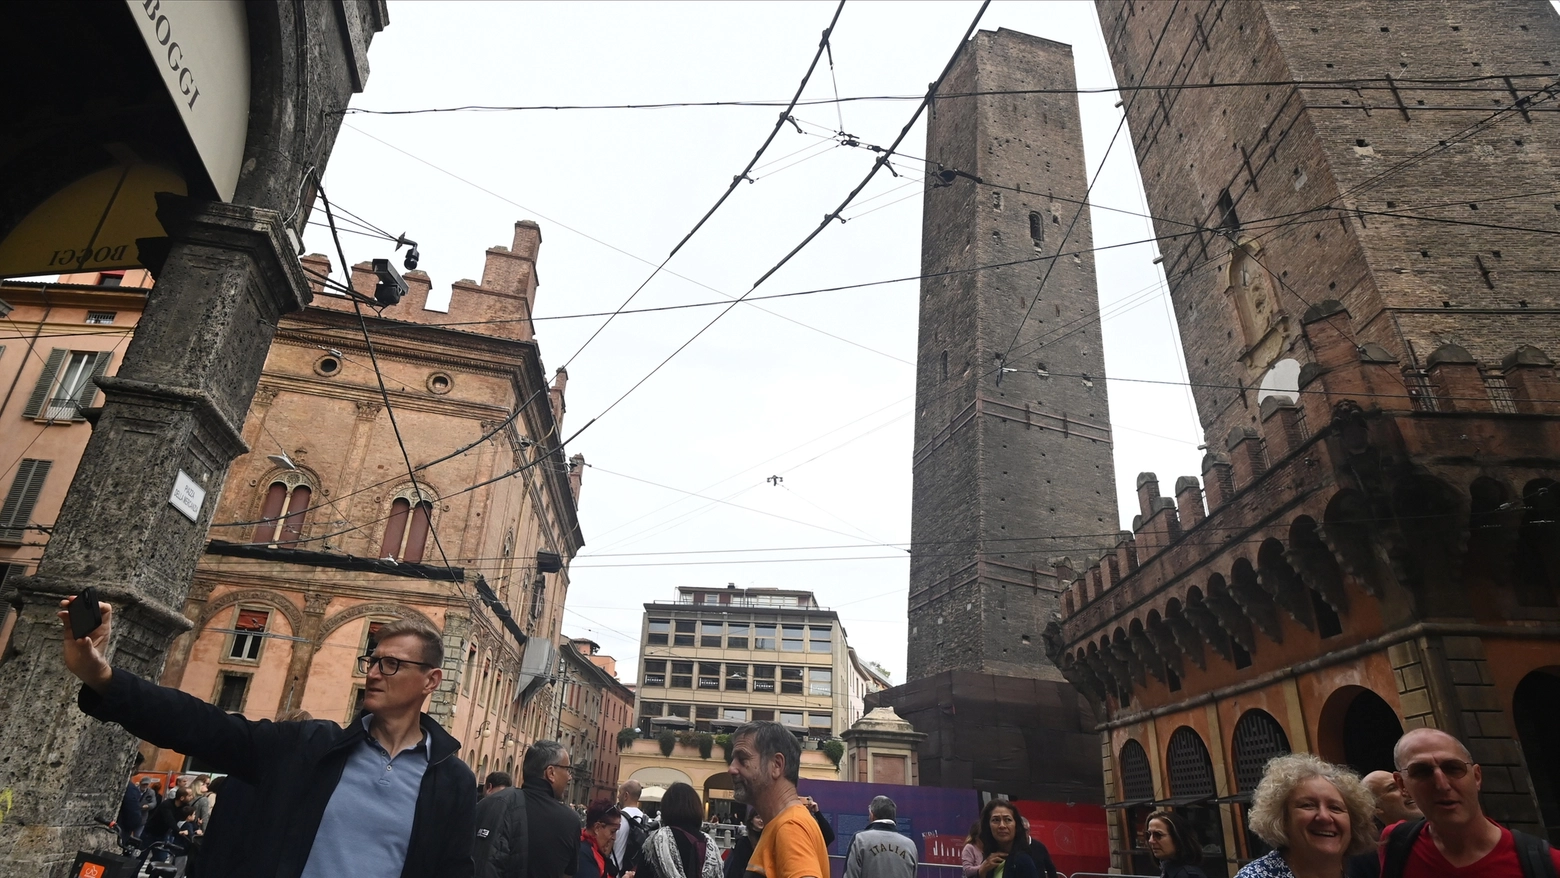 La torre Garisenda ha un problema strutturale: rivoluzionata la mobilità per l'accesso al centro storico. Ecco cosa cambia e cosa potrebbe cambiare